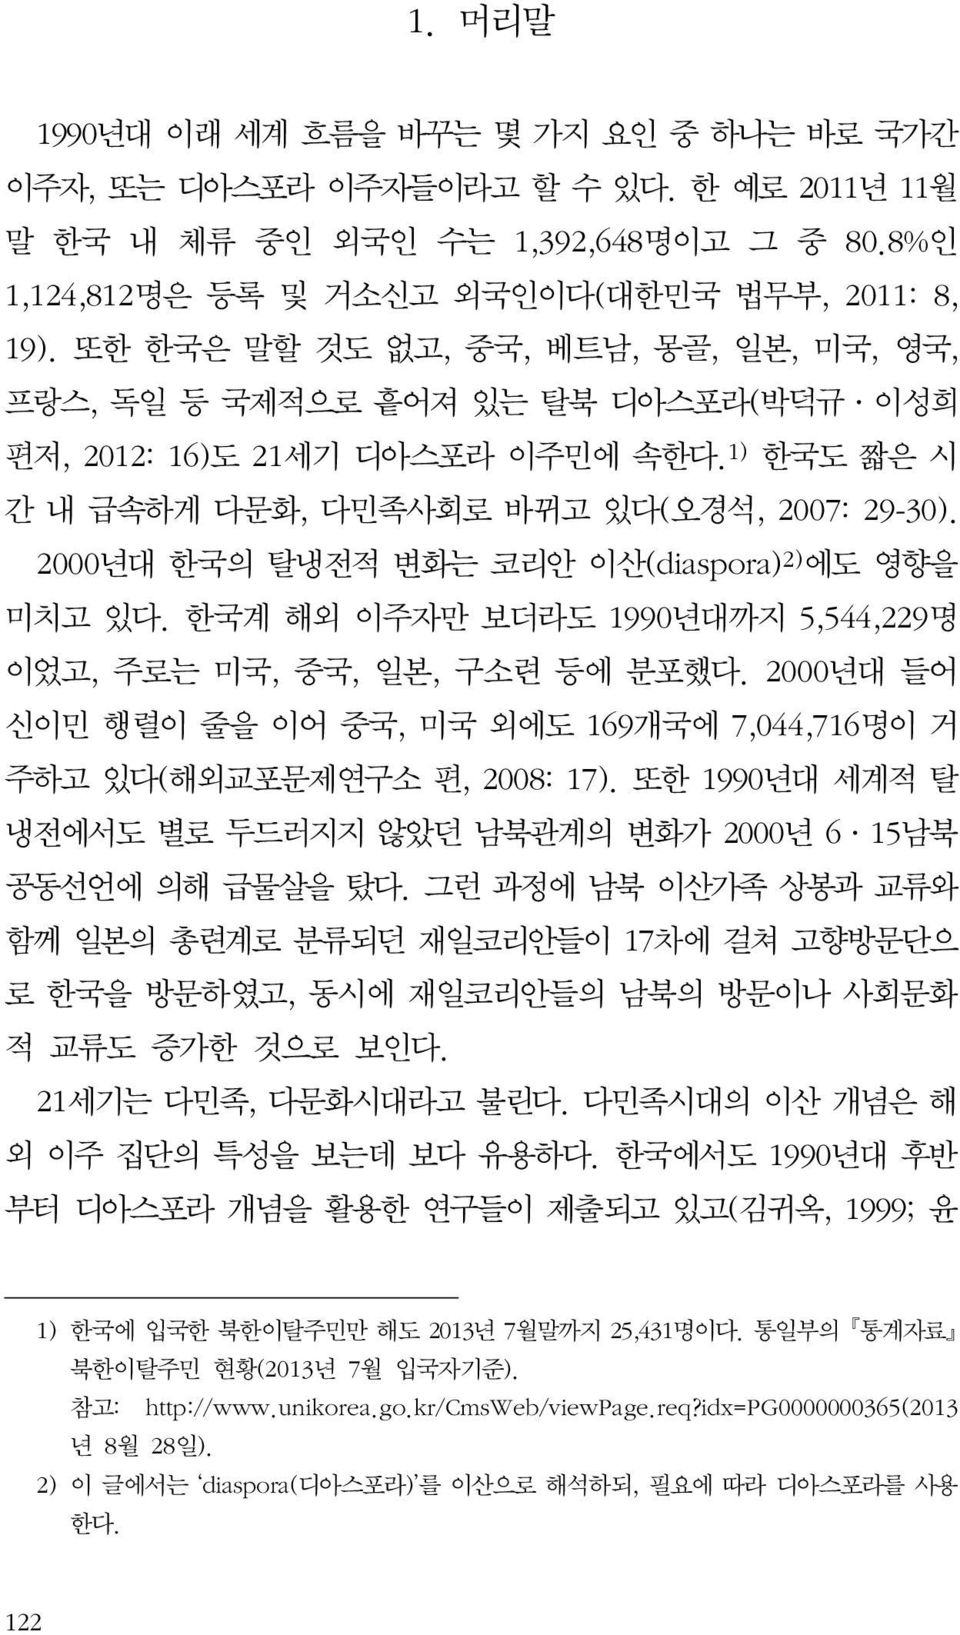 2000년대 한국의 탈냉전적 변화는 코리안 이산(diaspora) 2) 에도 영향을 미치고 있다. 한국계 해외 이주자만 보더라도 1990년대까지 5,544,229명 이었고, 주로는 미국, 중국, 일본, 구소련 등에 분포했다.